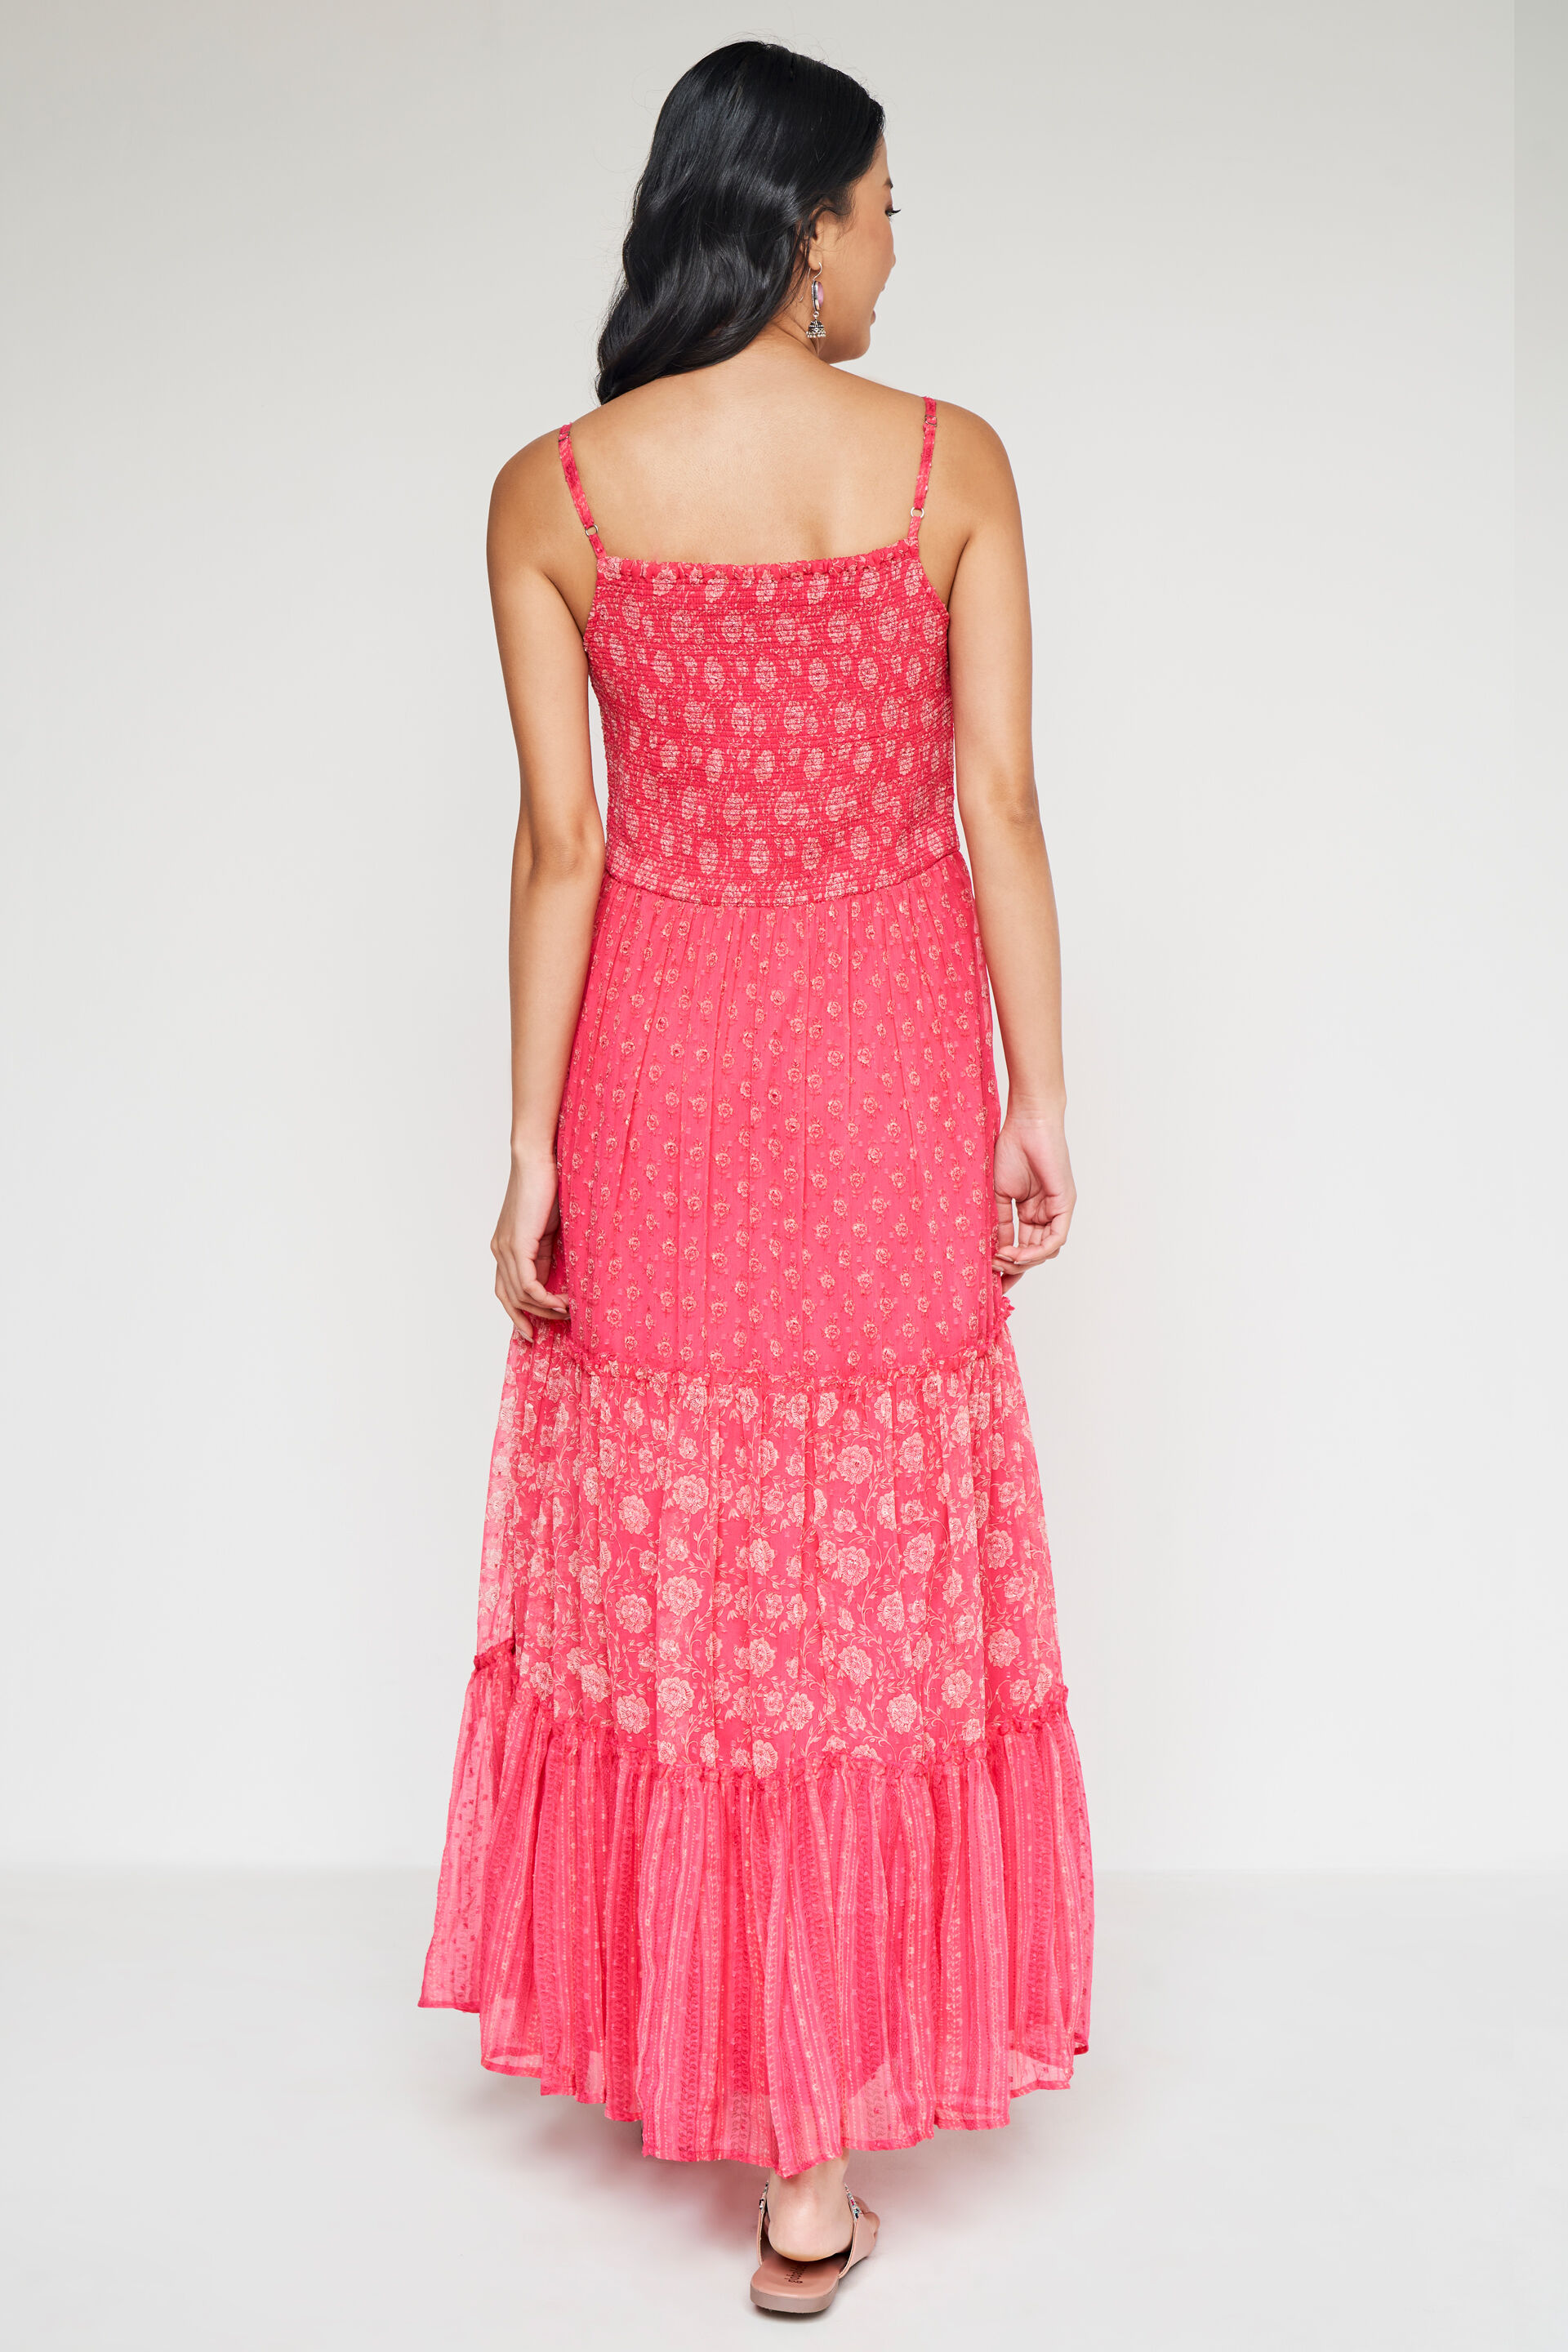 Buy Dark Pink Georgette Embroidered Dress Festive Wear Online at Best Price  | Cbazaar